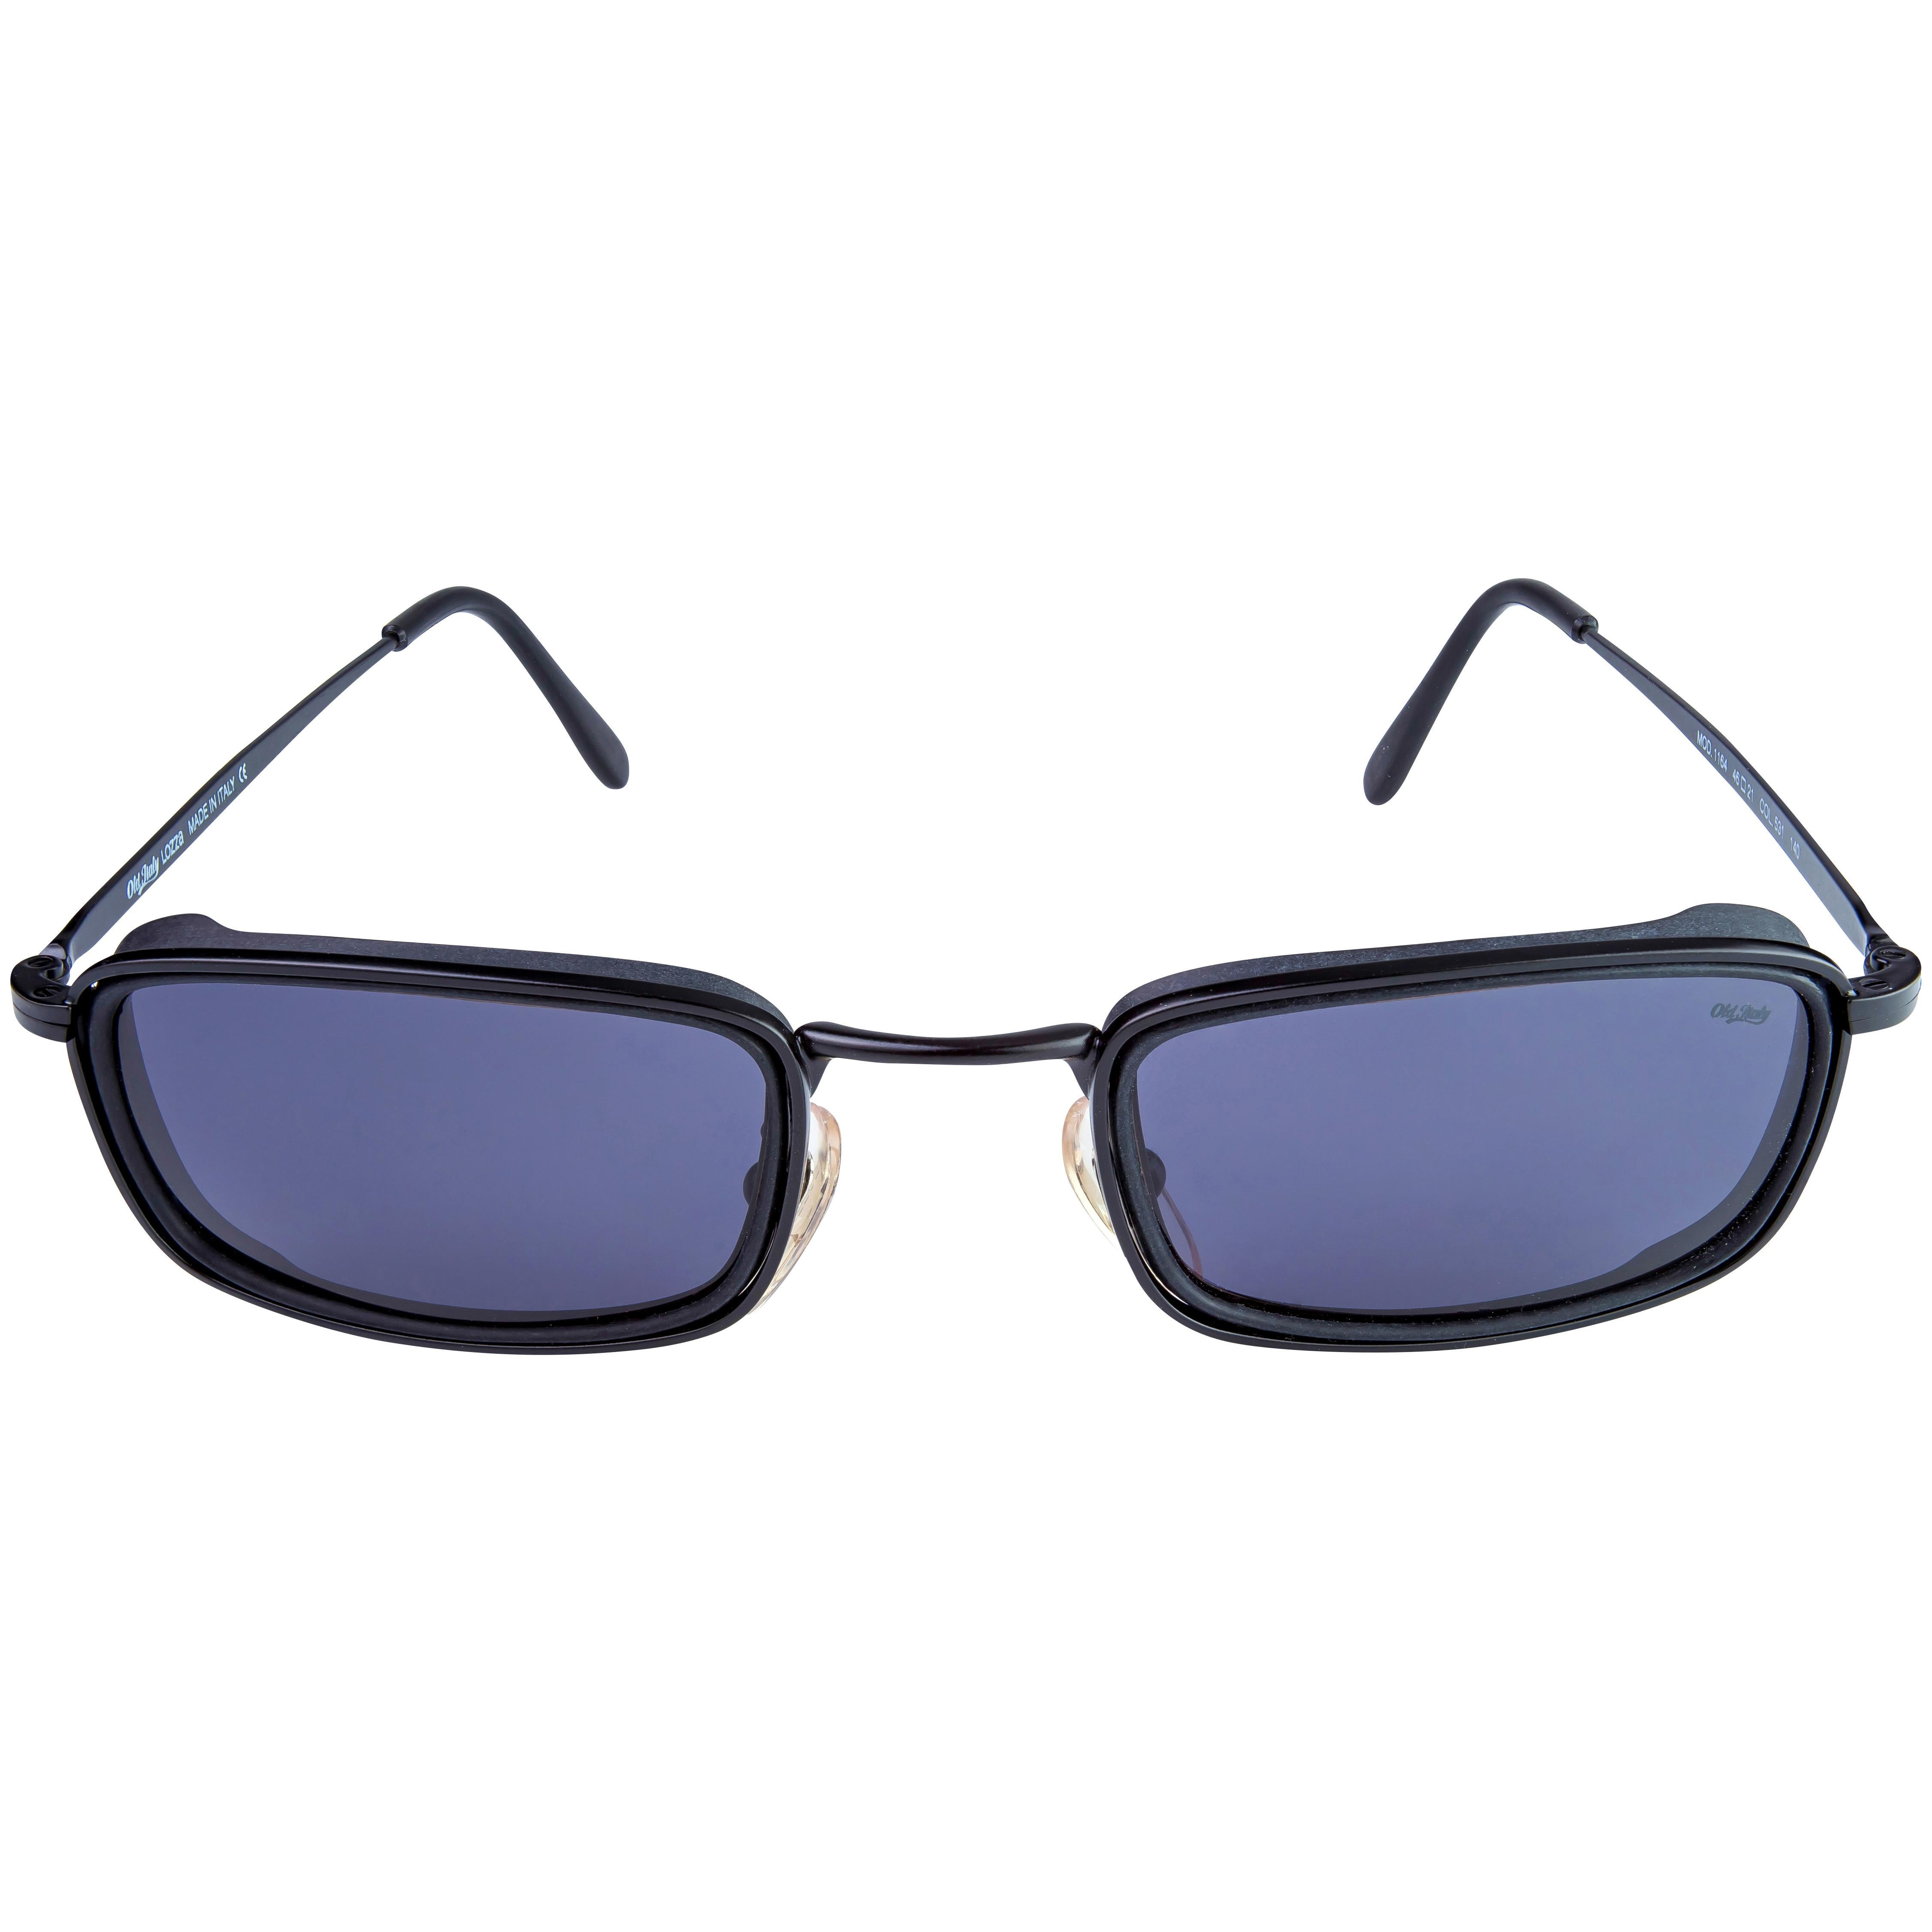 Créée en 1878, Lozza est la plus ancienne marque de lunettes en Italie, toujours précurseur dans le choix des styles et des matériaux : dans les années 20, elle a lancé les premières lunettes de soleil en cellulose et dans les années 30, les